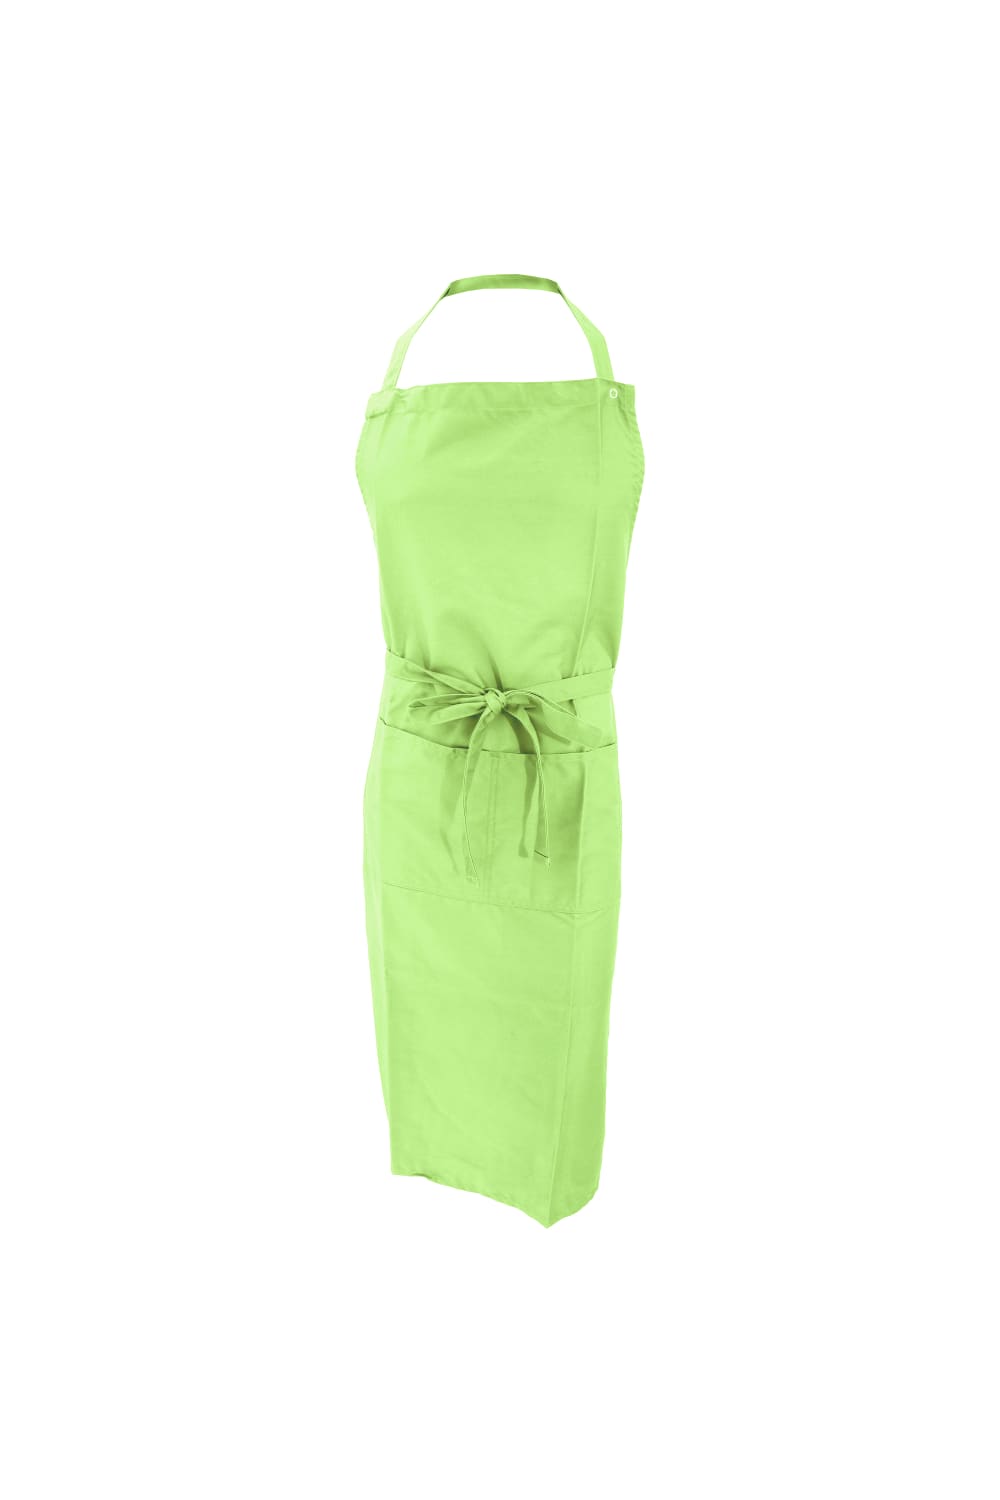 Jassz Bistro Unisex Bib Apron With Pocket / Barwear (Lime) (One Size) (One Size)